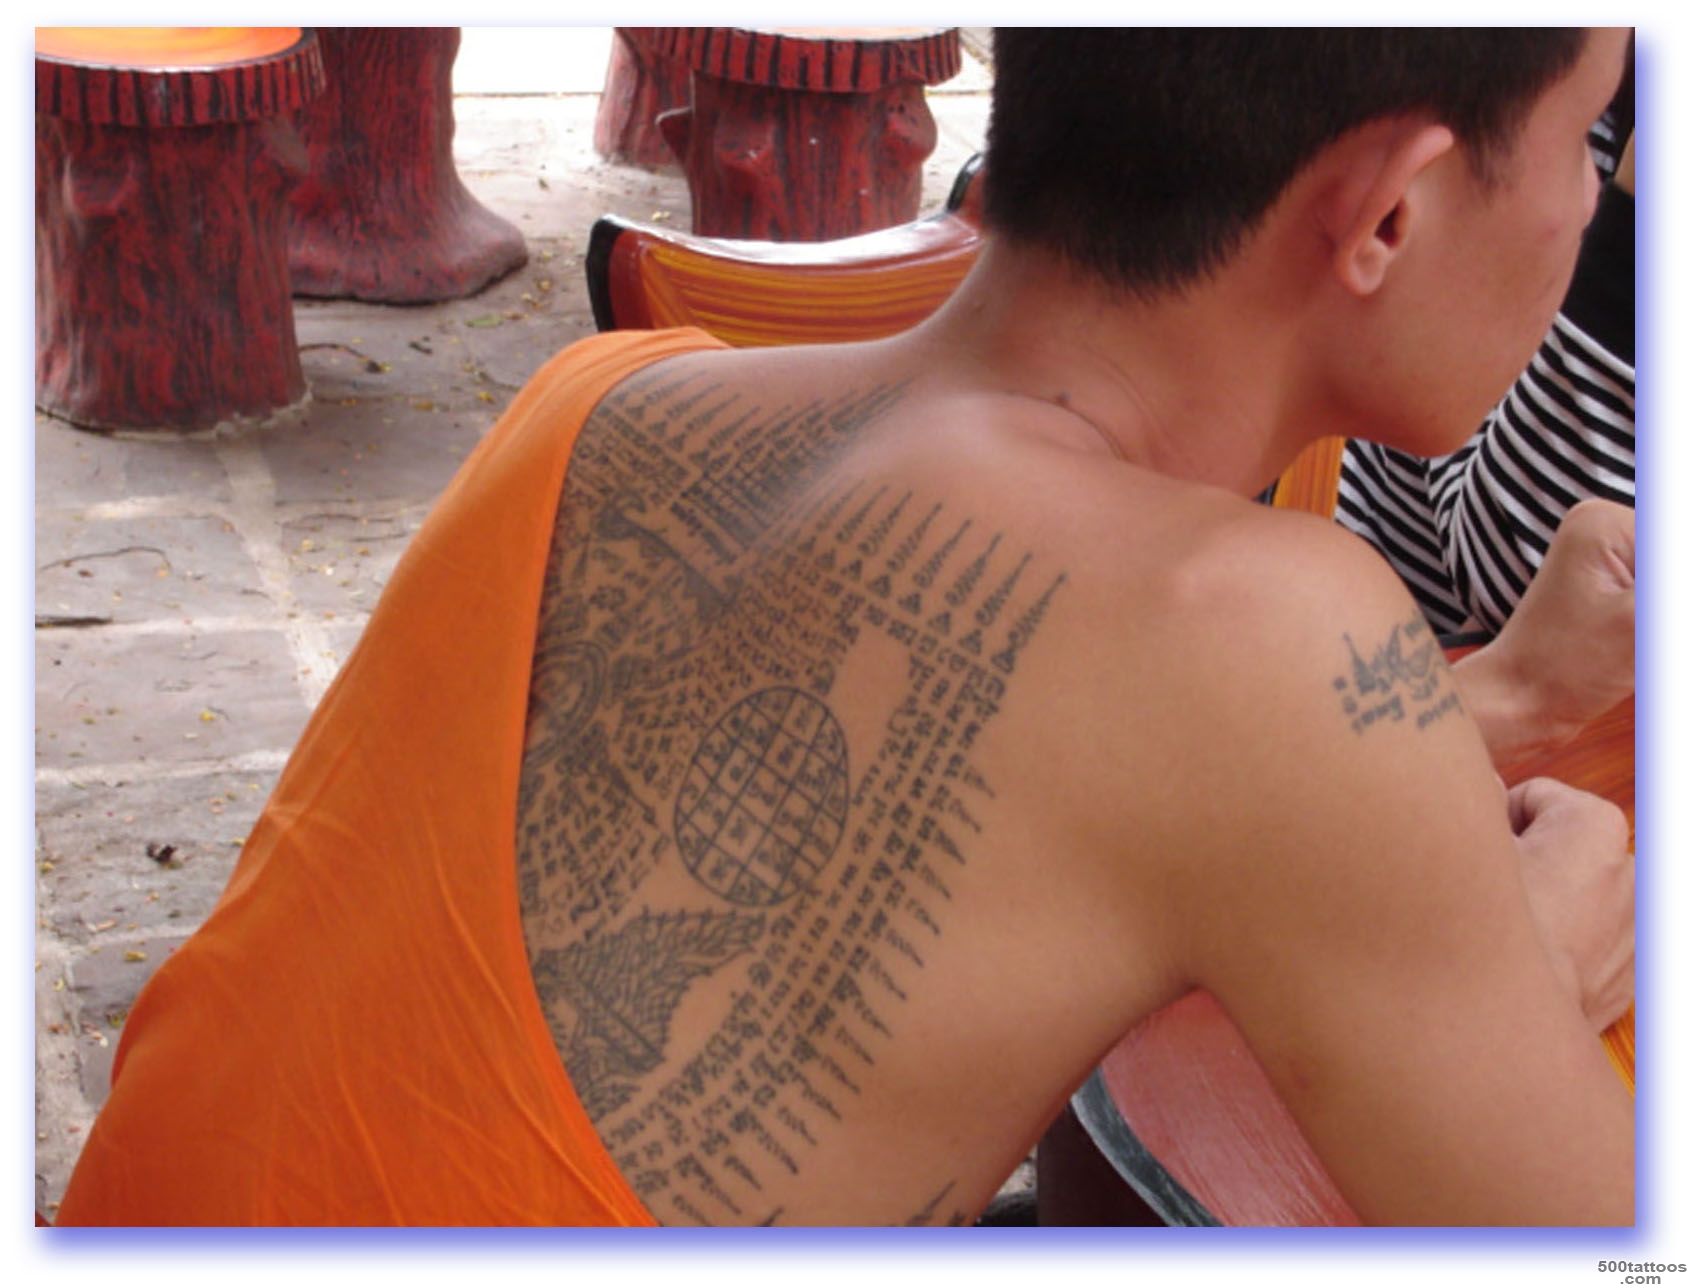 Sak Yant Thai Temple Tattoos  Sak Yant Buddhist Temple Tattoos ..._12